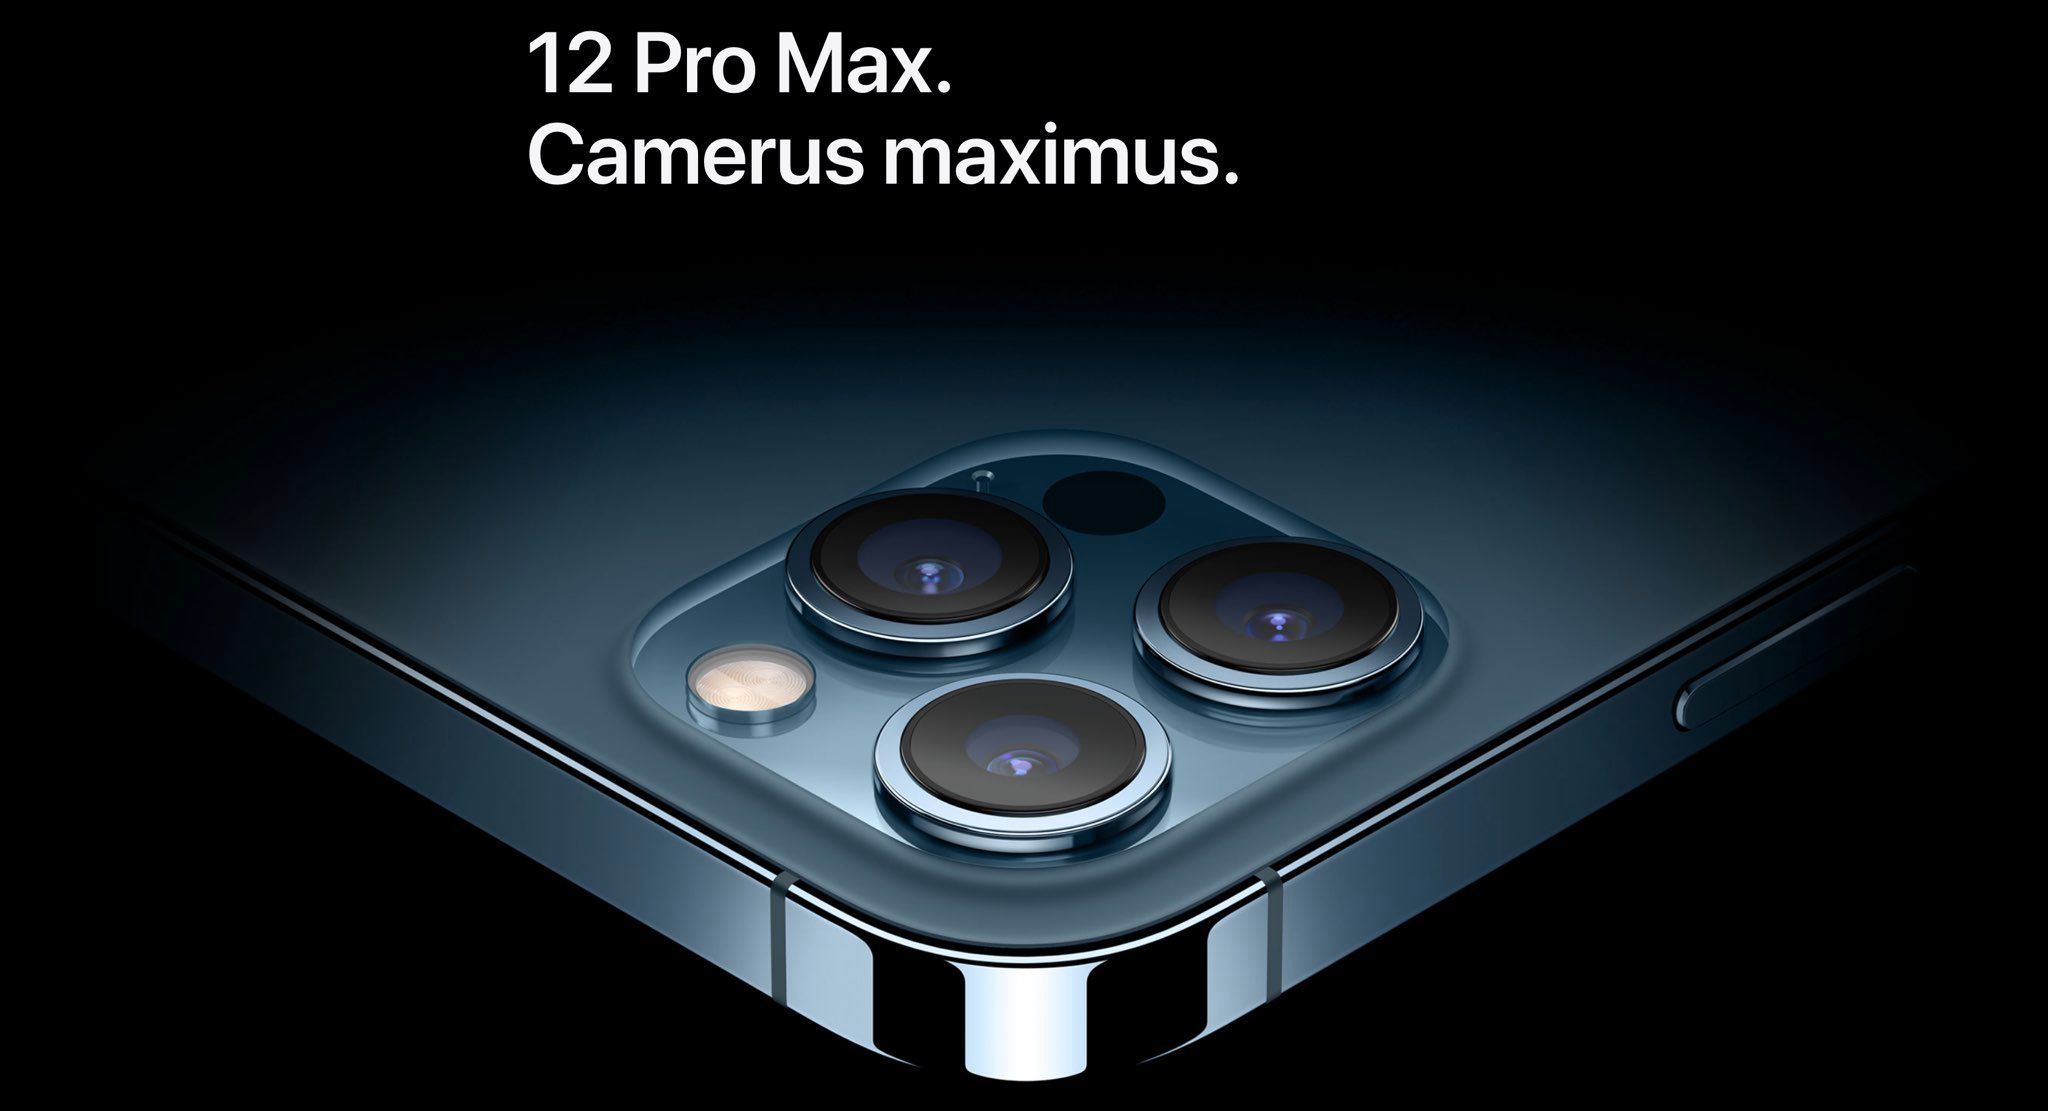 iPhone-12-Pro-Max-camerus-maximus-001